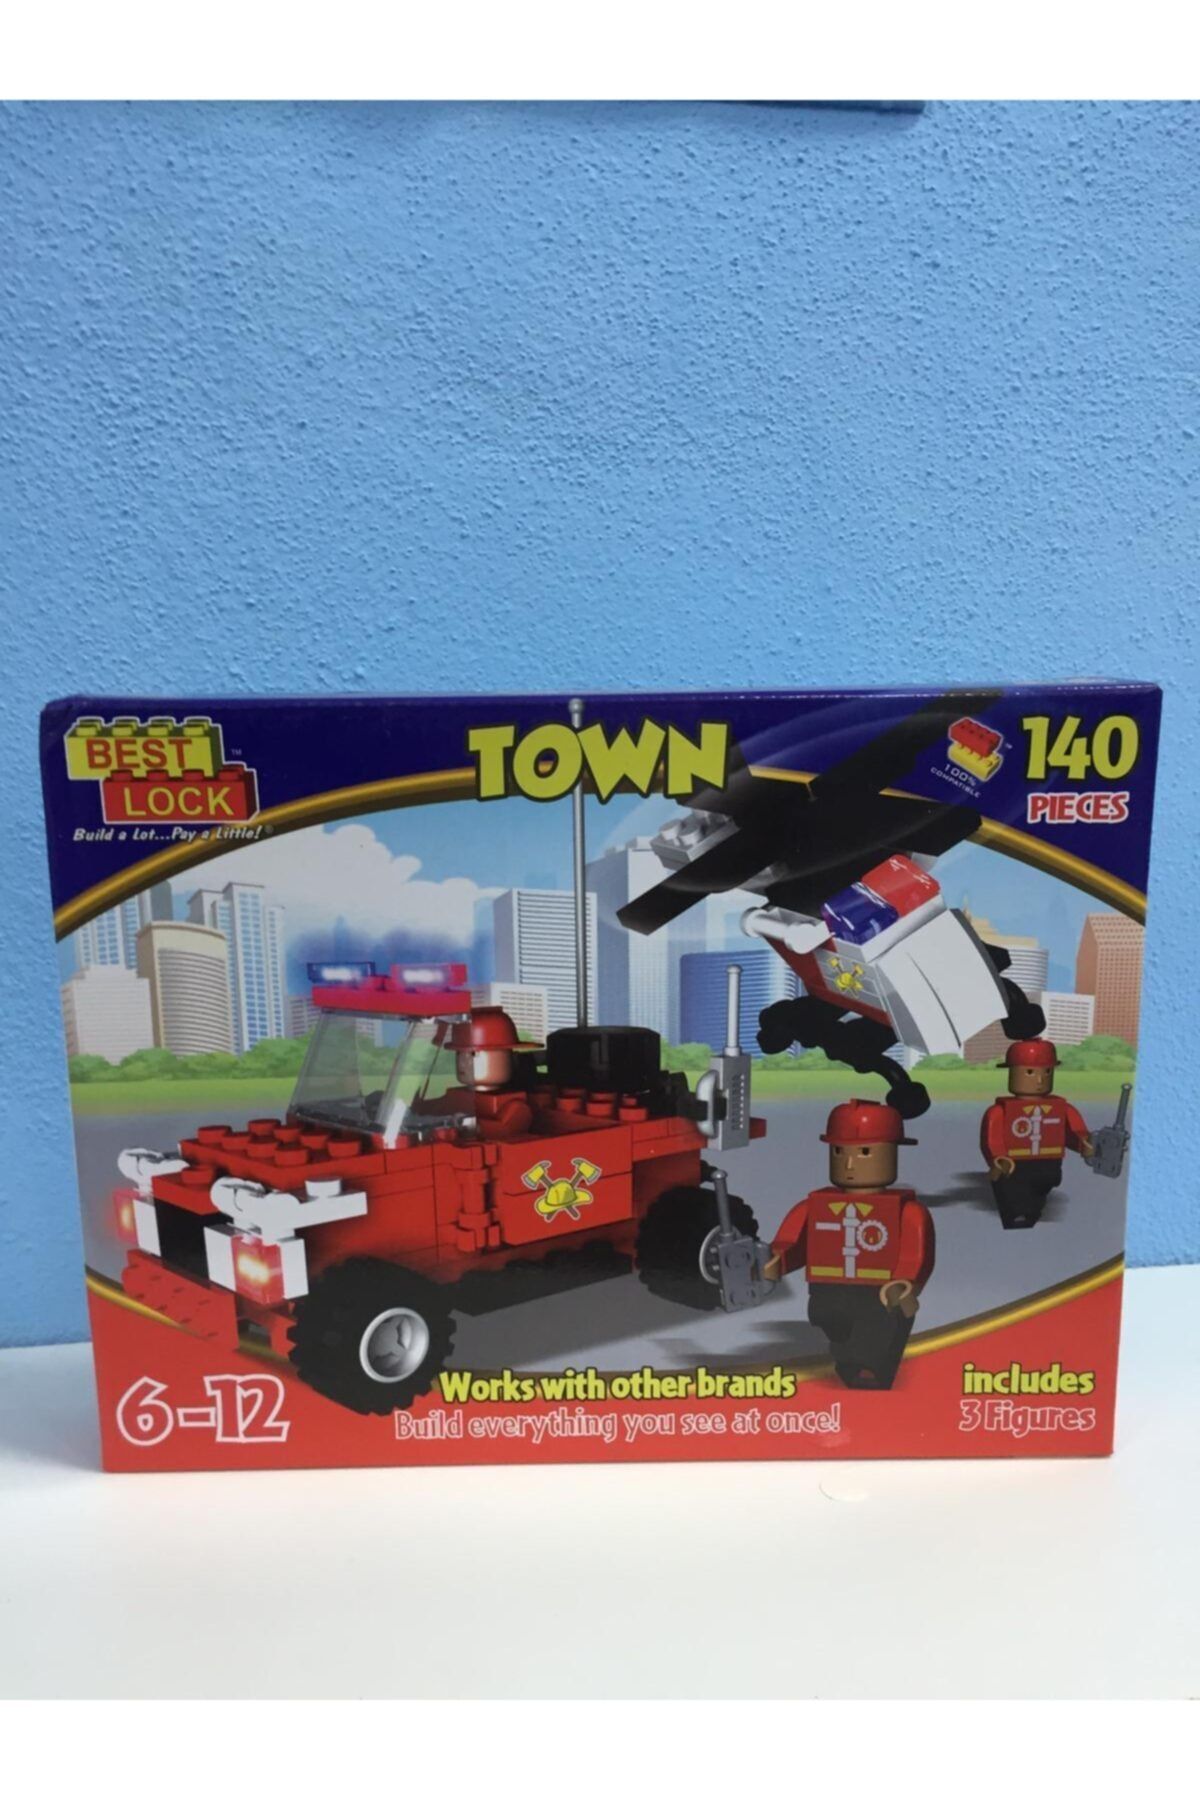 Vardem Oyuncak Vardem Best Lock Town Lego 140 Parca 6 12 Yas Fiyati Yorumlari Trendyol